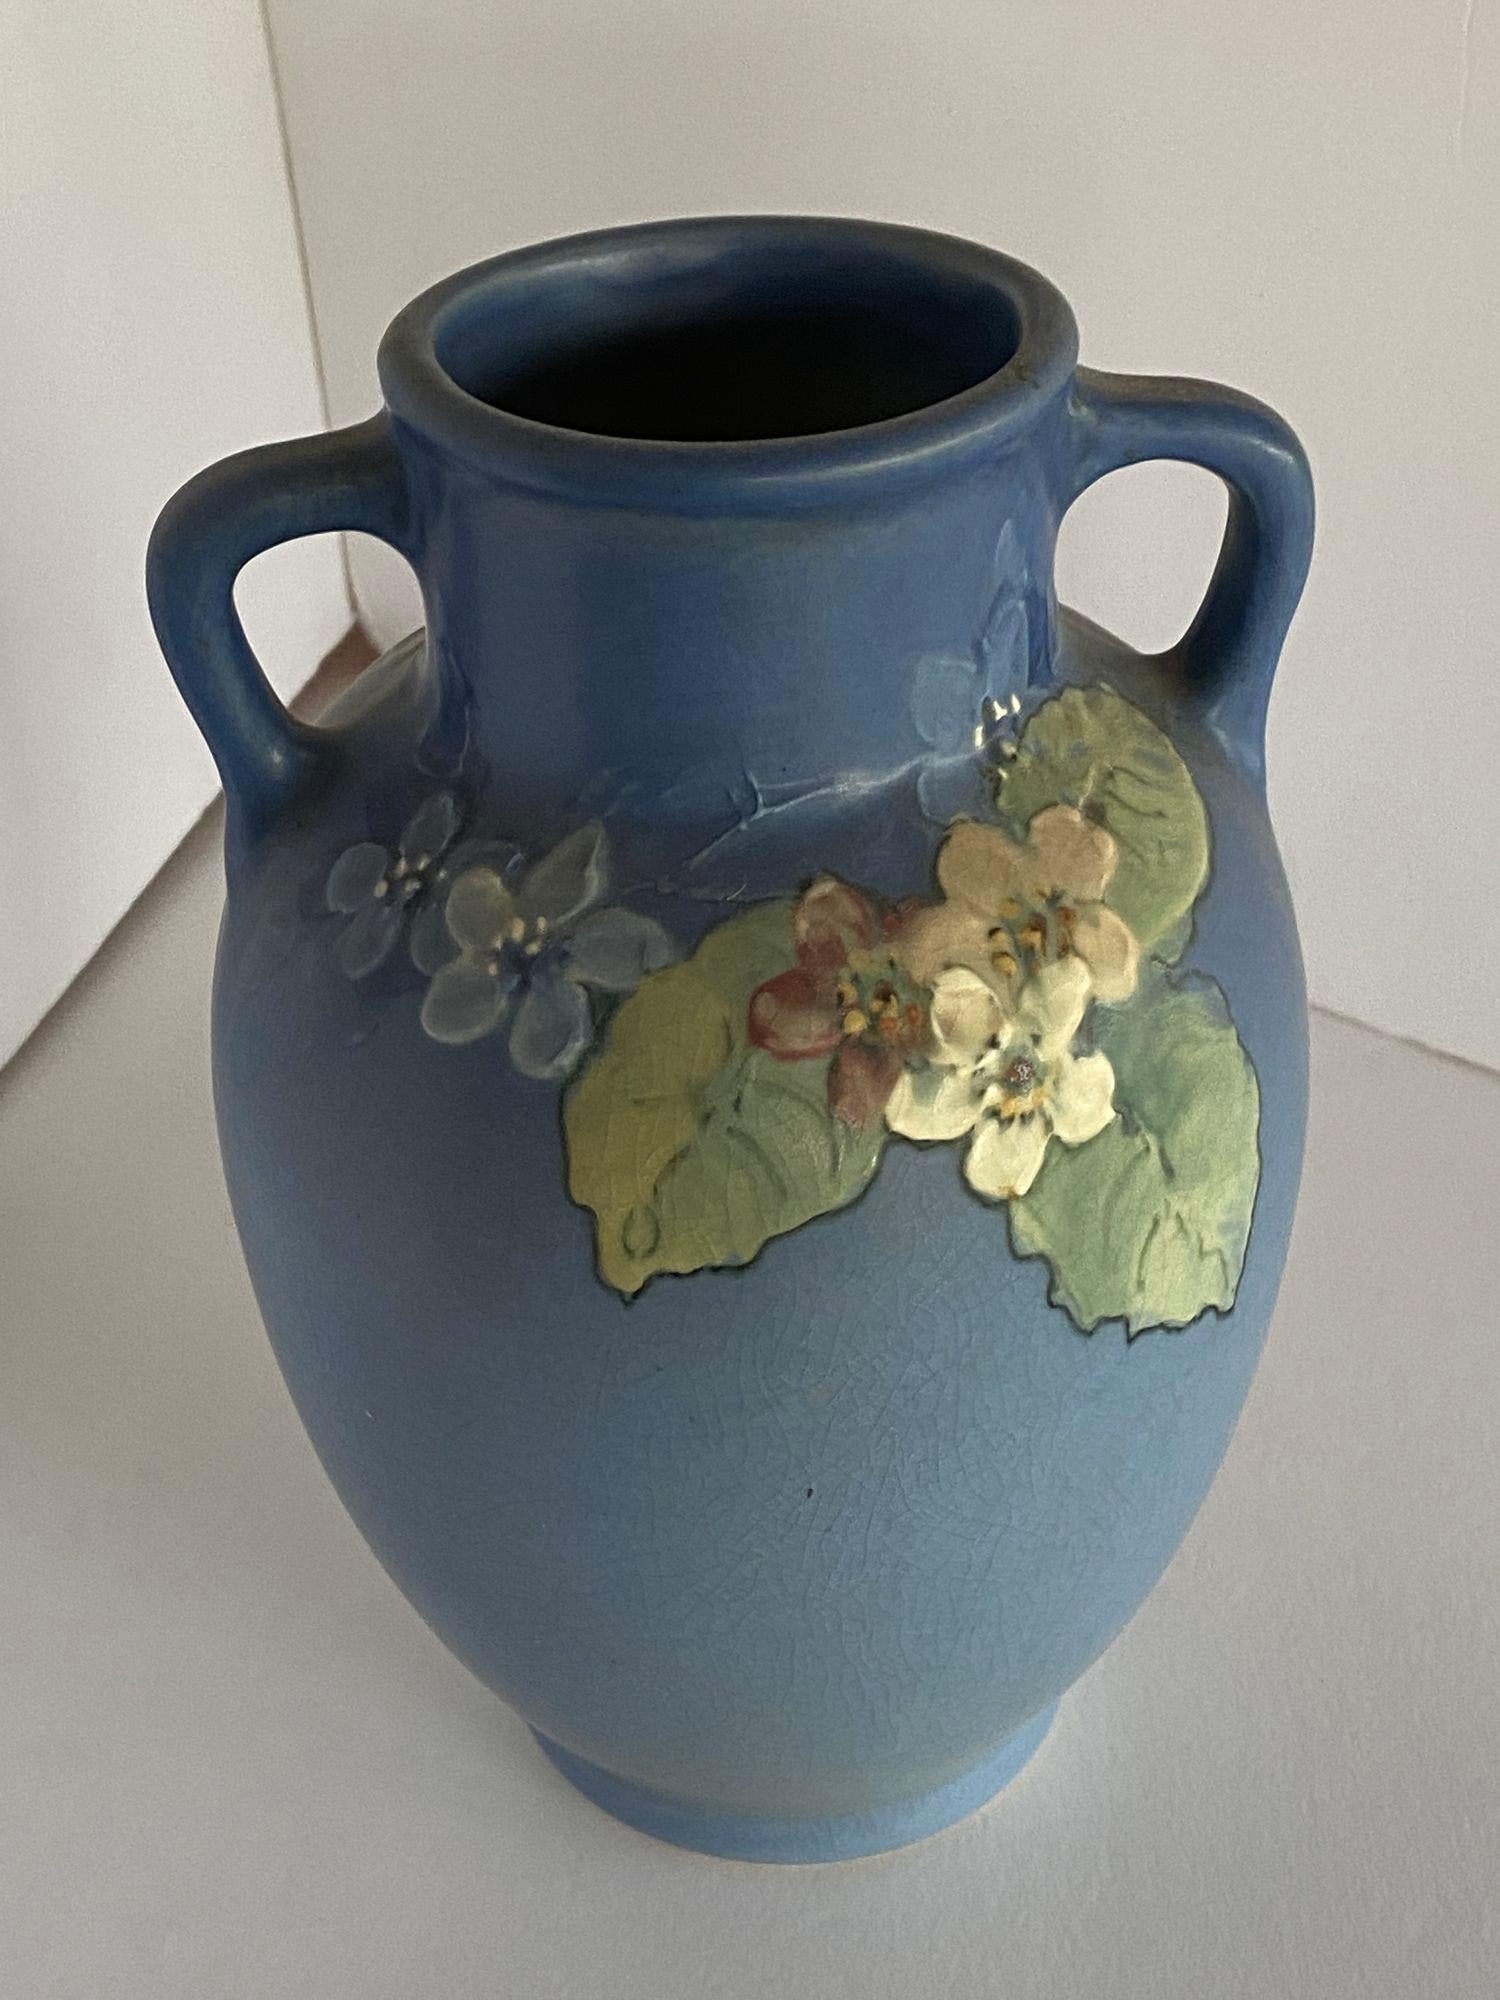 Vase ancien en poterie d'art Arts & Crafts de Weller Pottery présentant un motif floral rose et blanc sur un fond dégradé allant du vert mousse de mer au bleu, signé par l'artiste et le fabricant comme sur la photo, vers 1920.

Mesures : 9,75